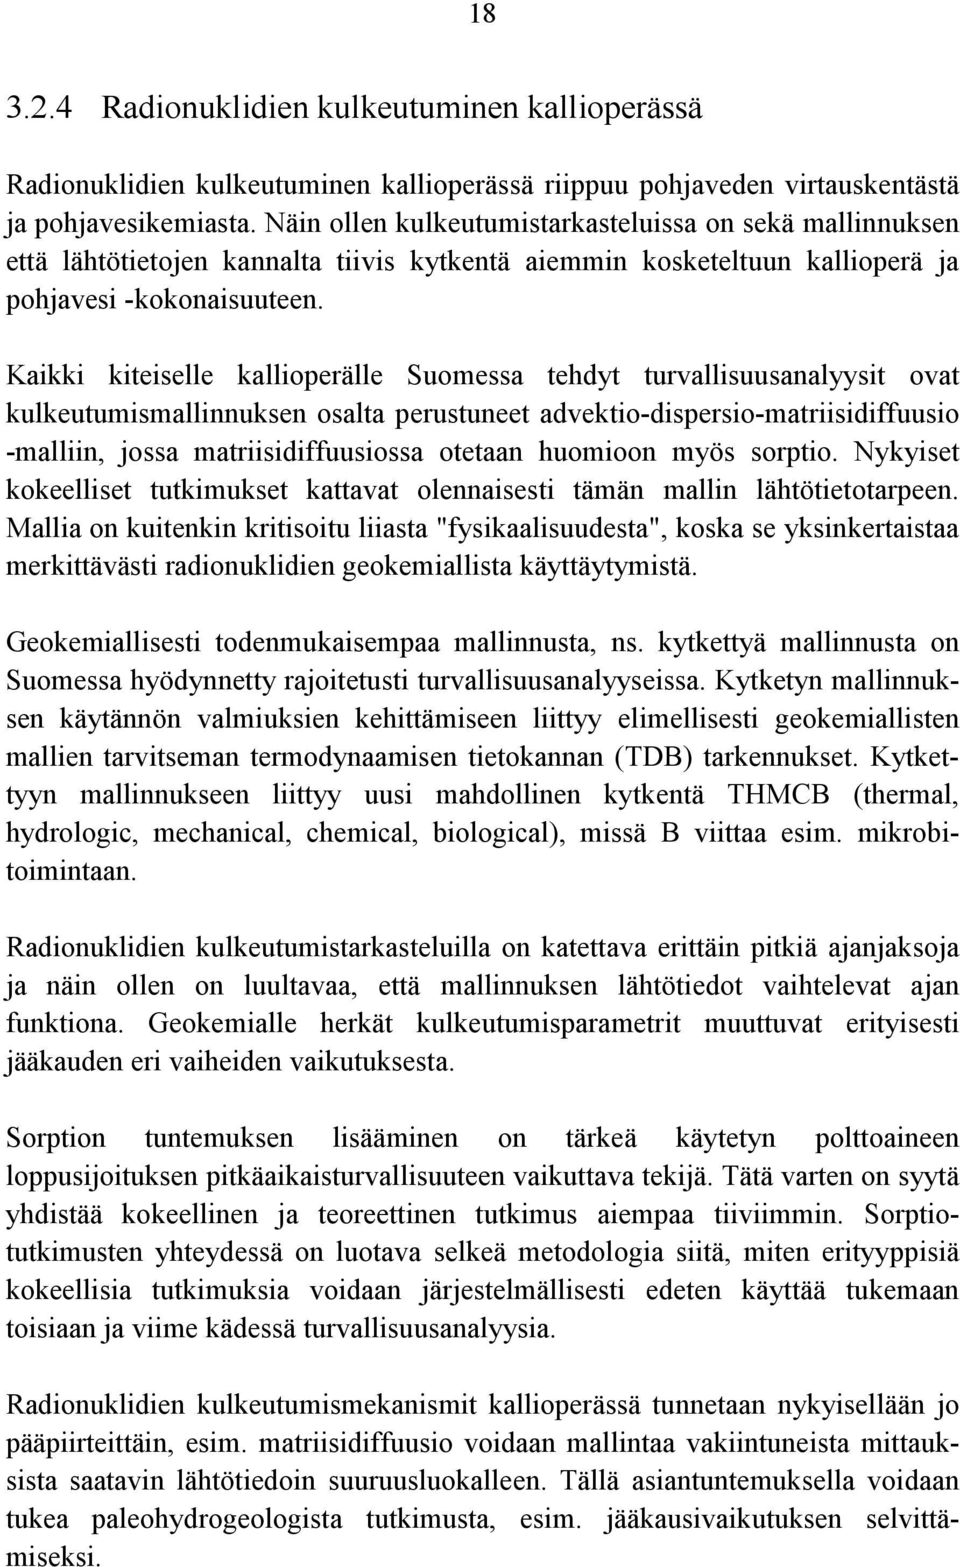 Kaikki kiteiselle kallioperälle Suomessa tehdyt turvallisuusanalyysit ovat kulkeutumismallinnuksen osalta perustuneet advektio-dispersio-matriisidiffuusio -malliin, jossa matriisidiffuusiossa otetaan